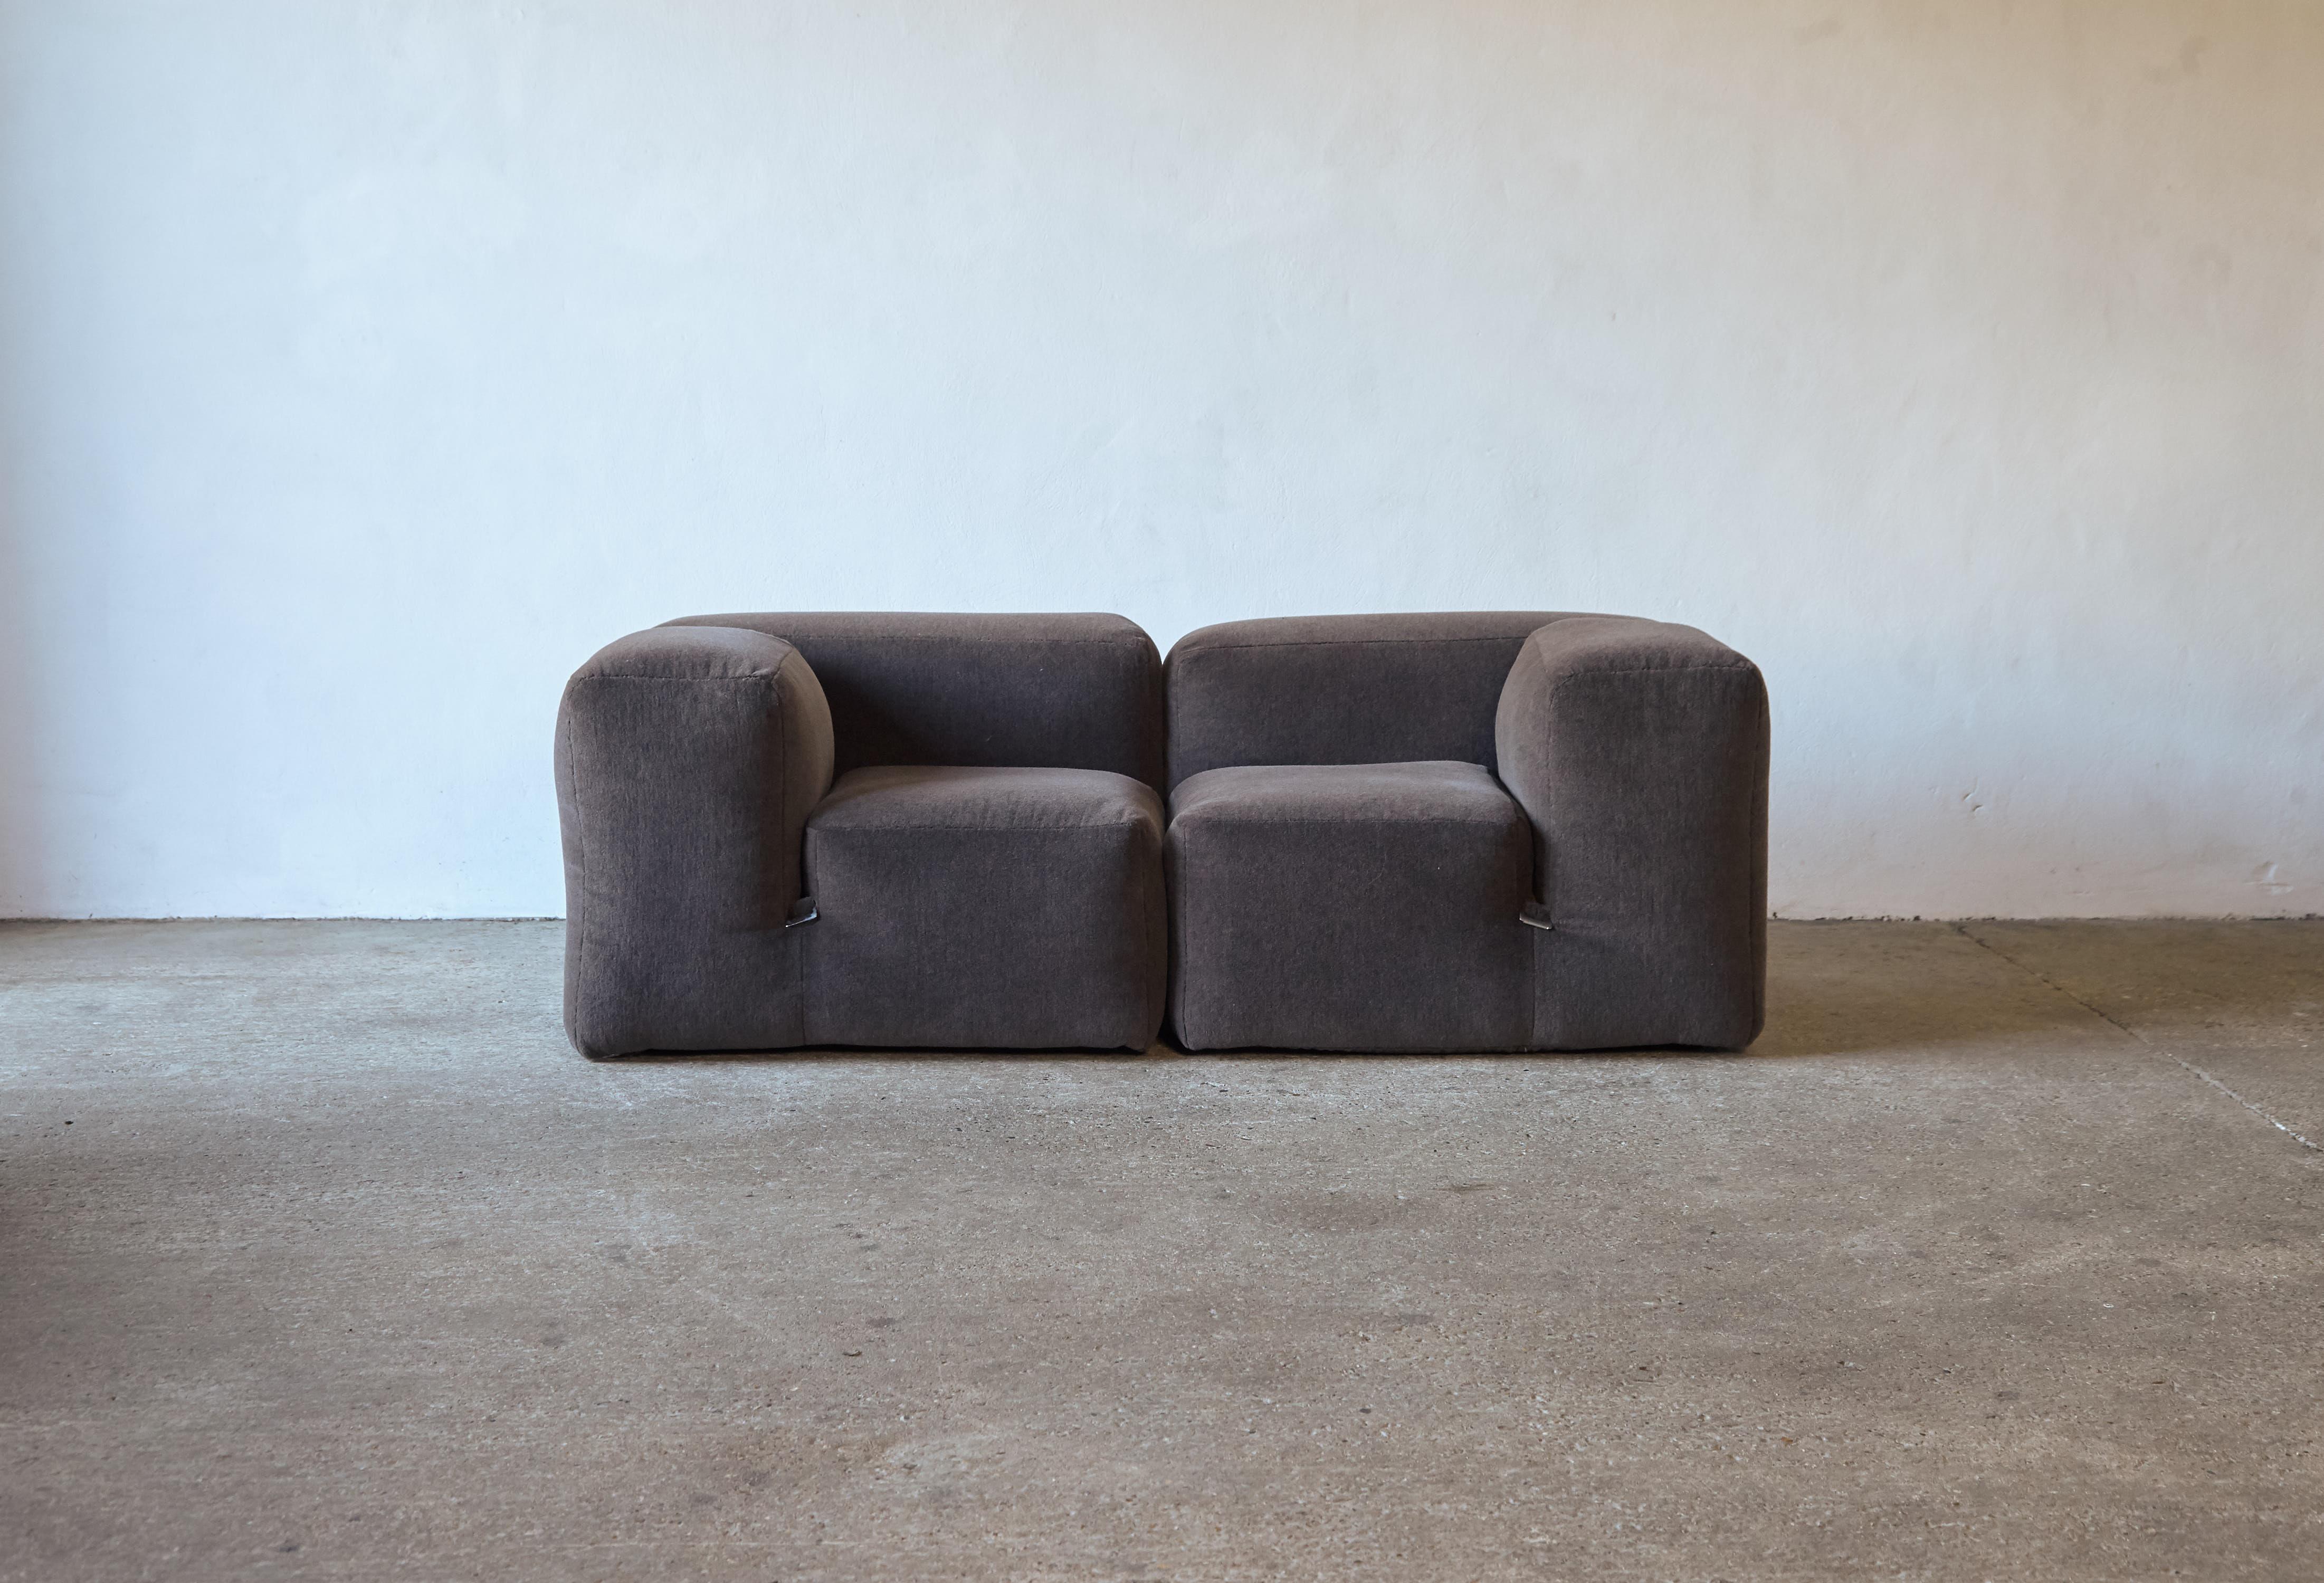 Ein originales und sehr seltenes Mario Bellini Le Mura Modulsofa (kann auch als zwei Stühle verwendet werden), hergestellt von Cassina, Italien, 1970er Jahre. Zwei große Sitzelemente, die zusammen ein zweisitziges Sofa ergeben. Neu gepolstert mit